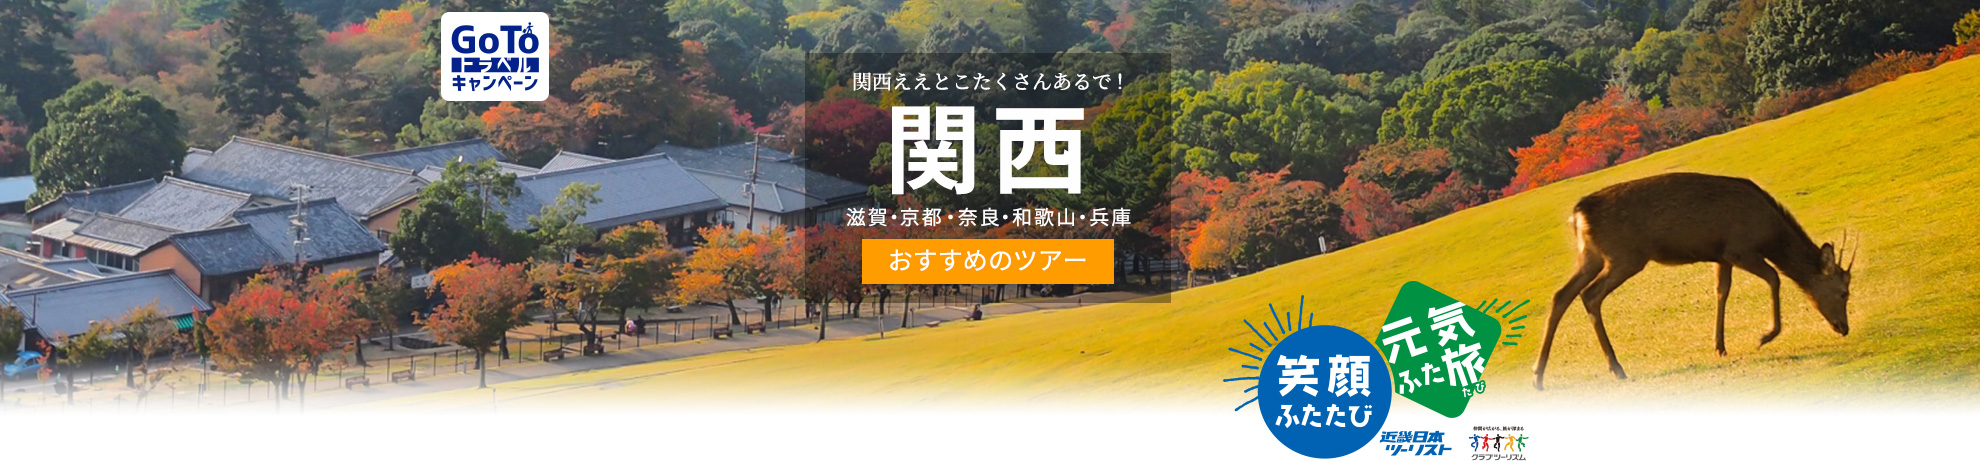 Go To トラベルキャンペーン 関西へ行くおすすめ国内旅行 ツアー 近畿日本ツーリスト